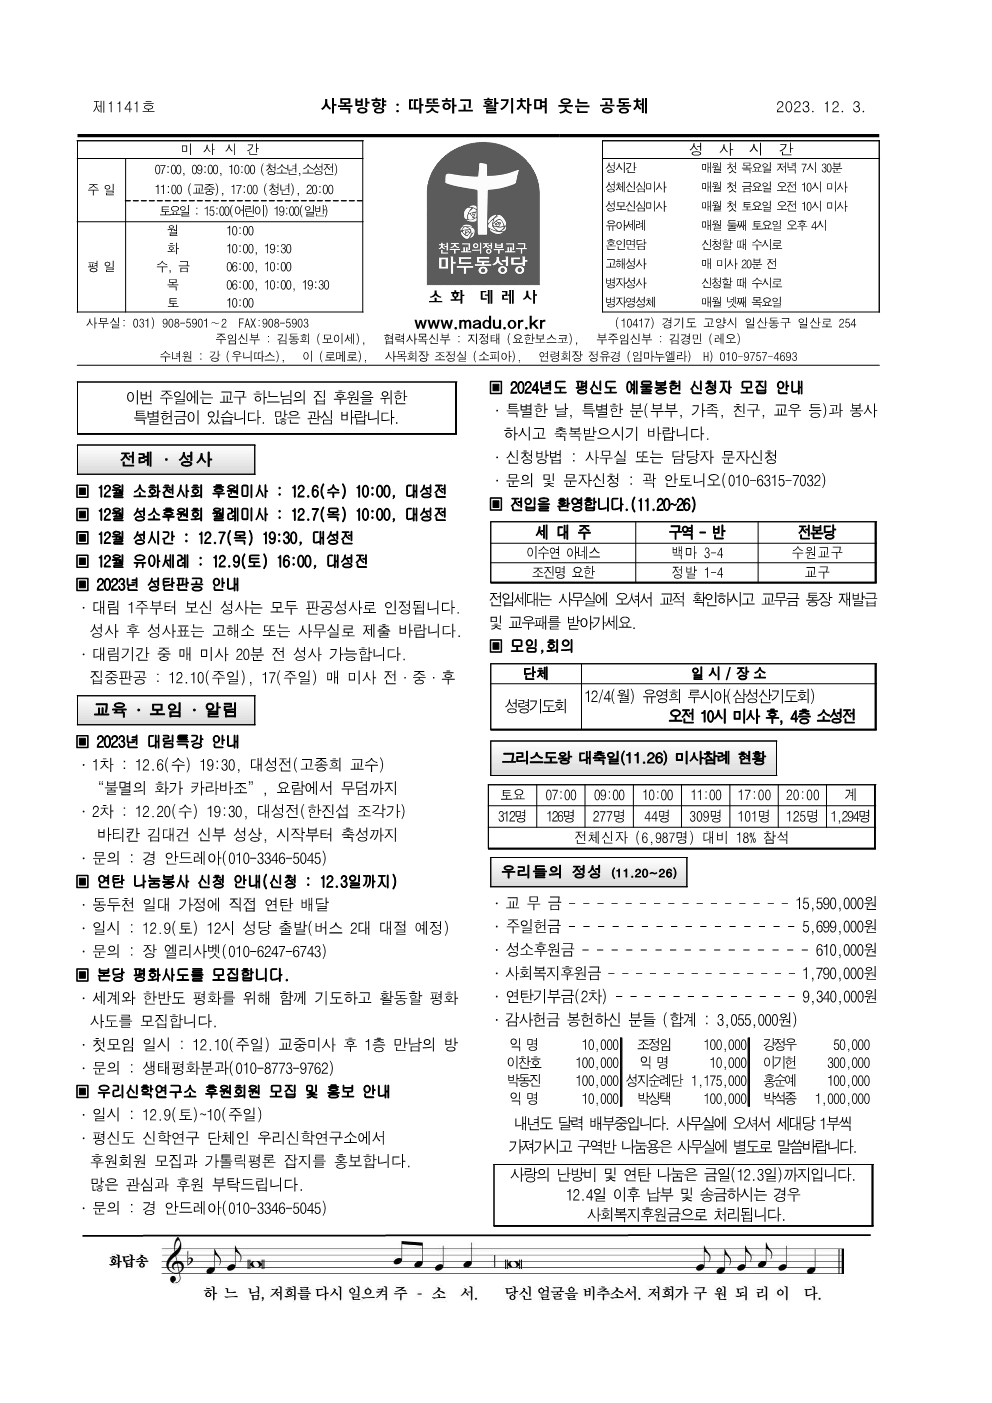 마두23-12-03주보 (2) (1)_1.png